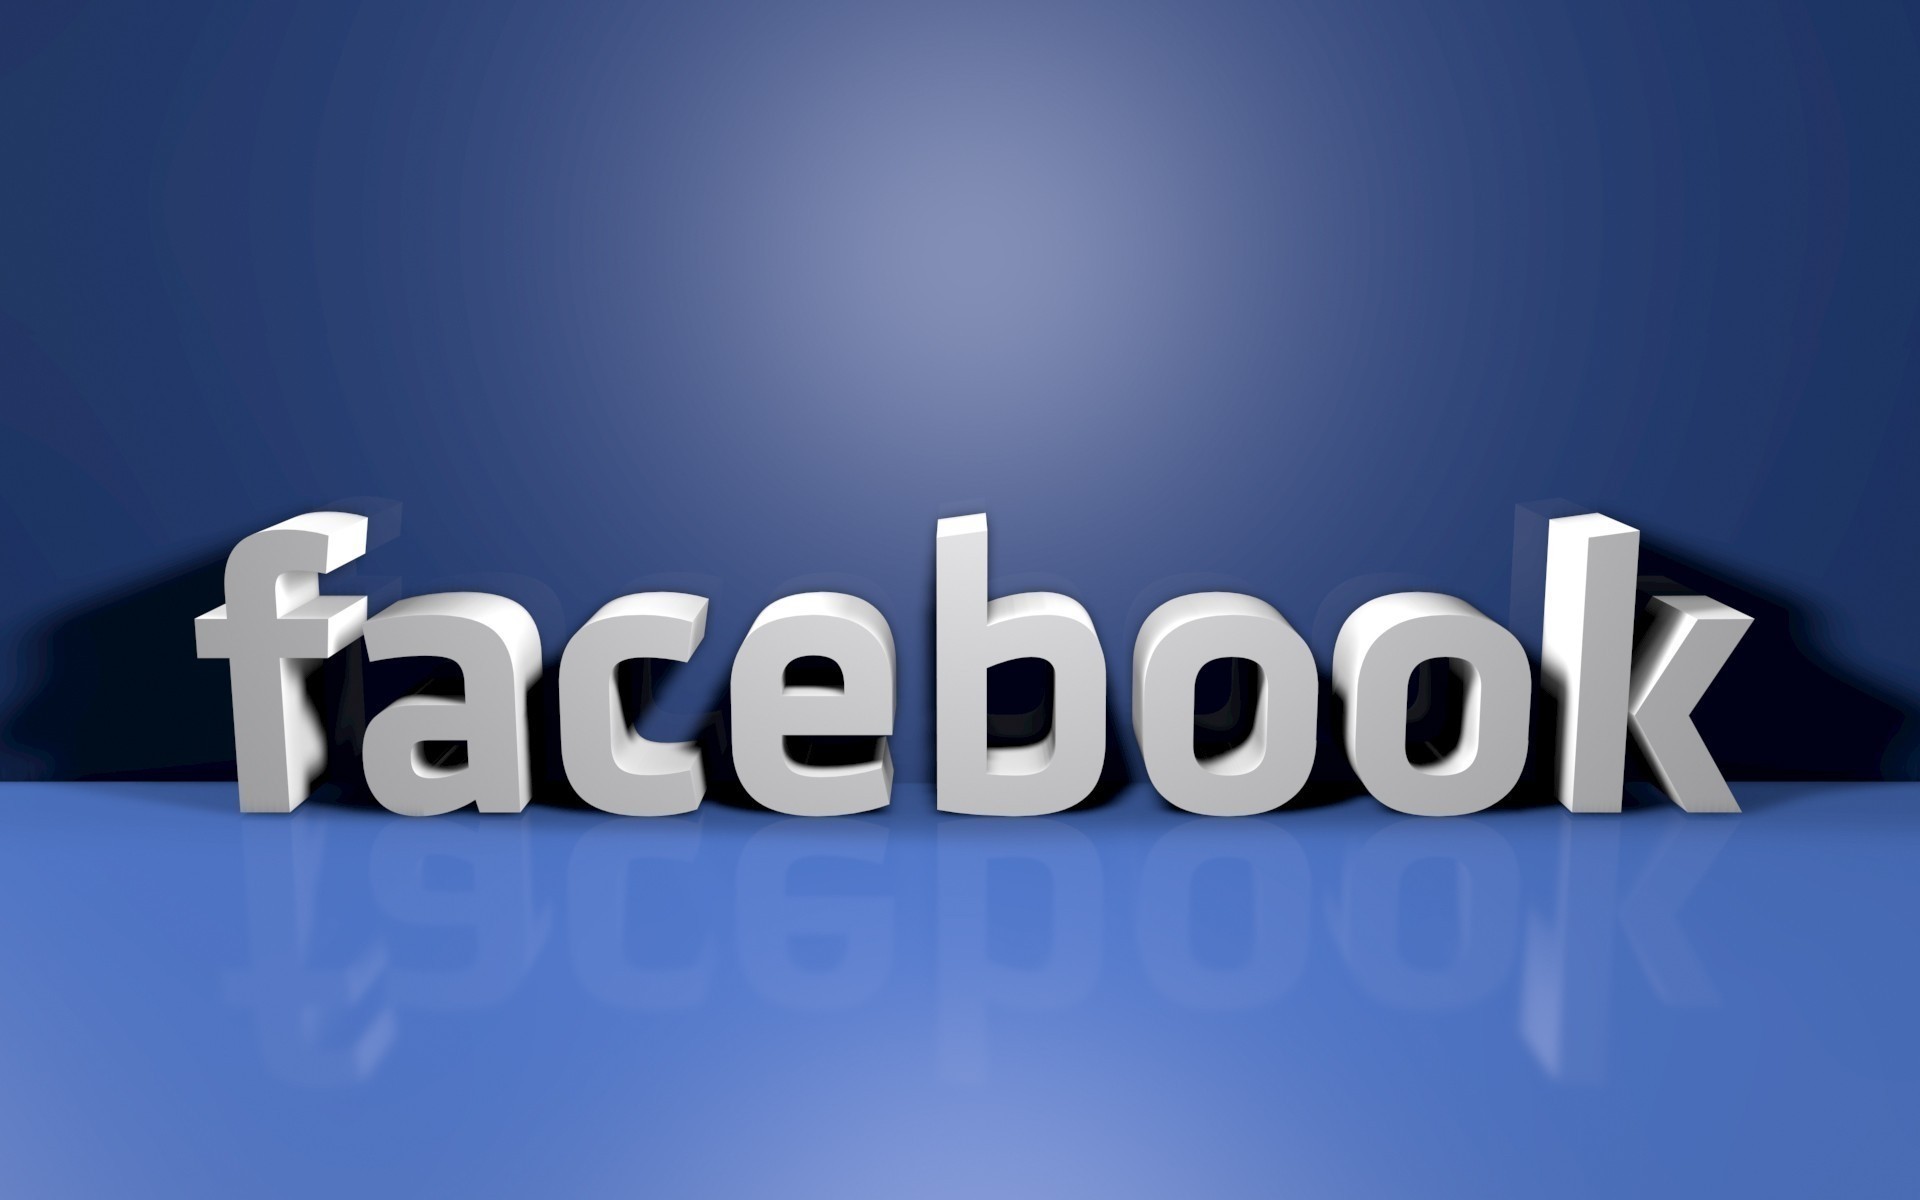 бренды и логотипы текст бизнес интернет рабочего стола иллюстрация технология символ компьютер всемирная паутина успех данные концептуальные социальная сеть дизайн логотипа фон 3d на facebook